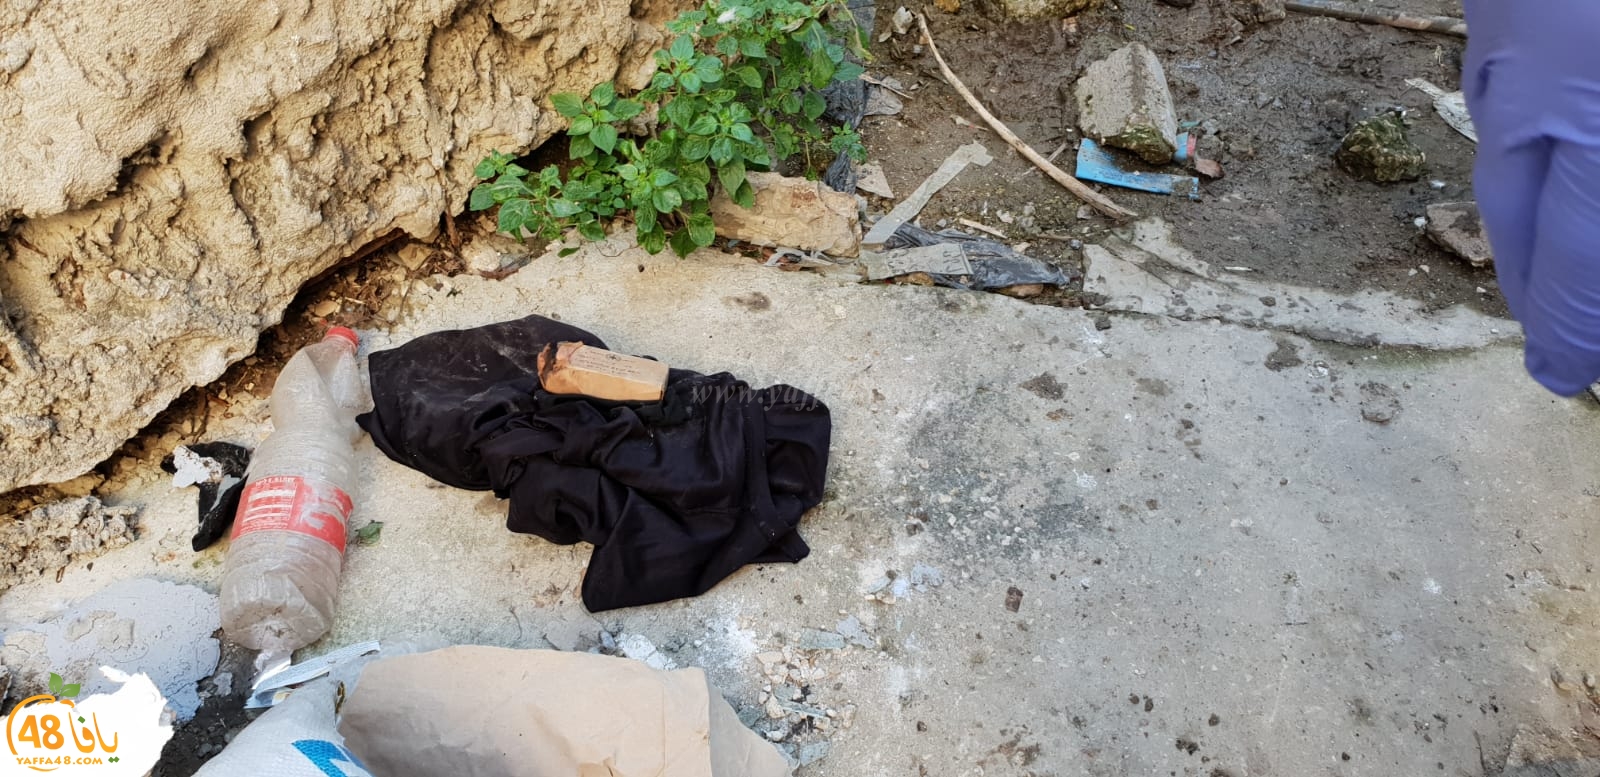  الشرطة: العثور على قطعة سلاح في مدينة يافا واعتقال مشتبه 